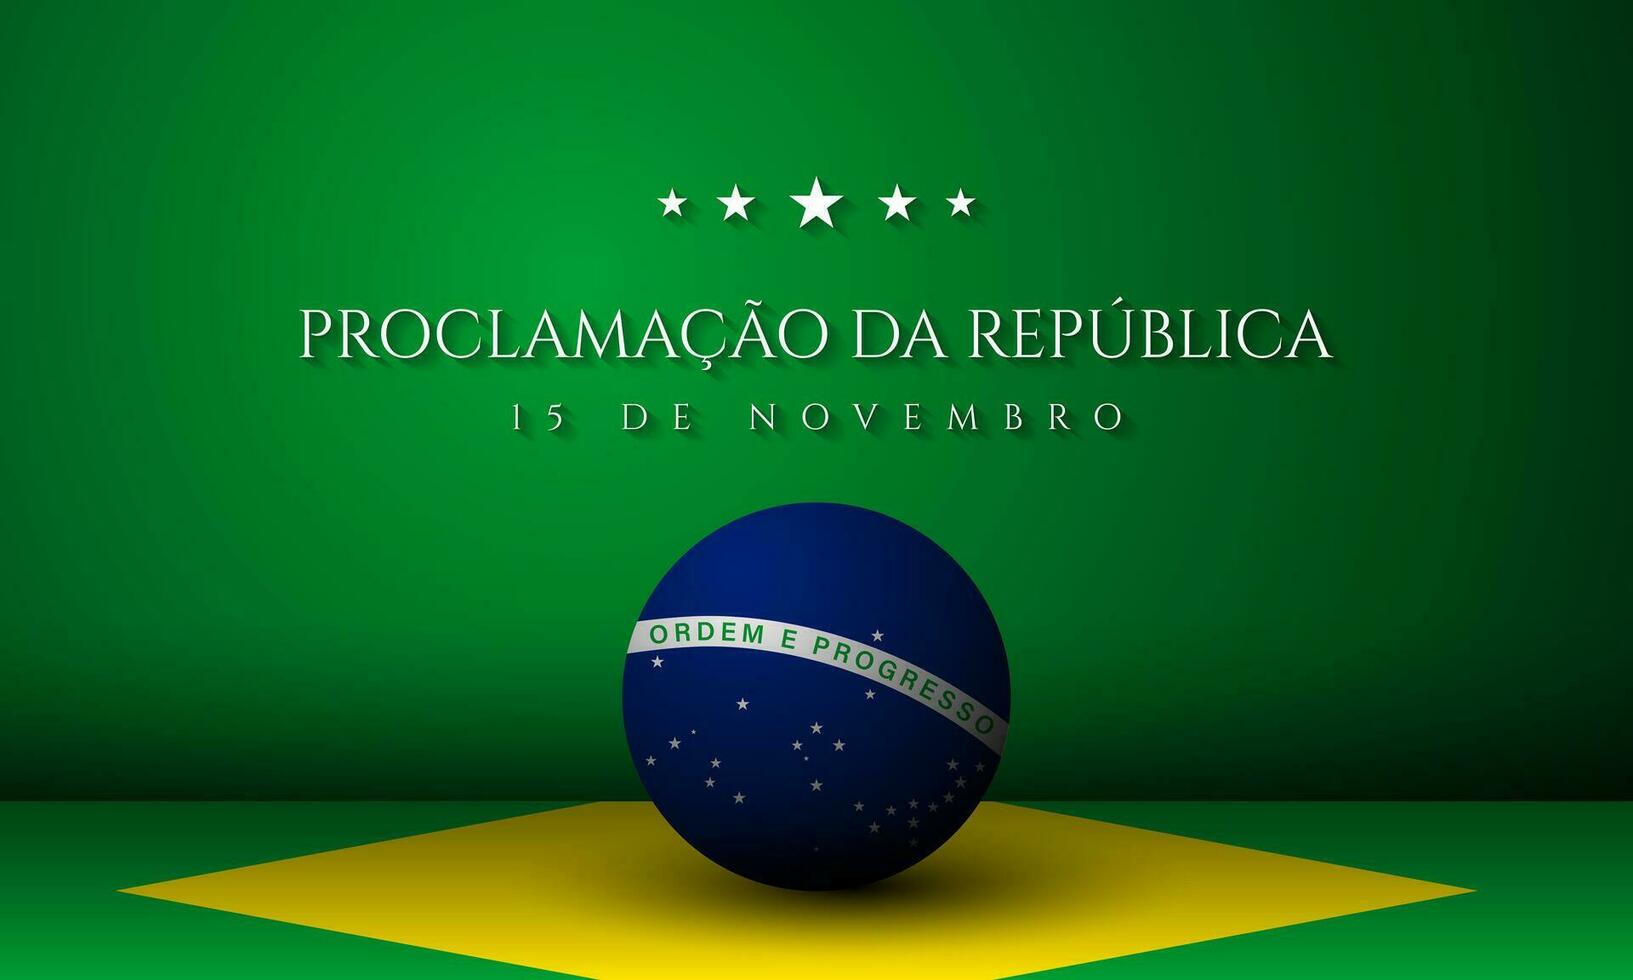 disegno del fondo del giorno della repubblica del brasile. vettore